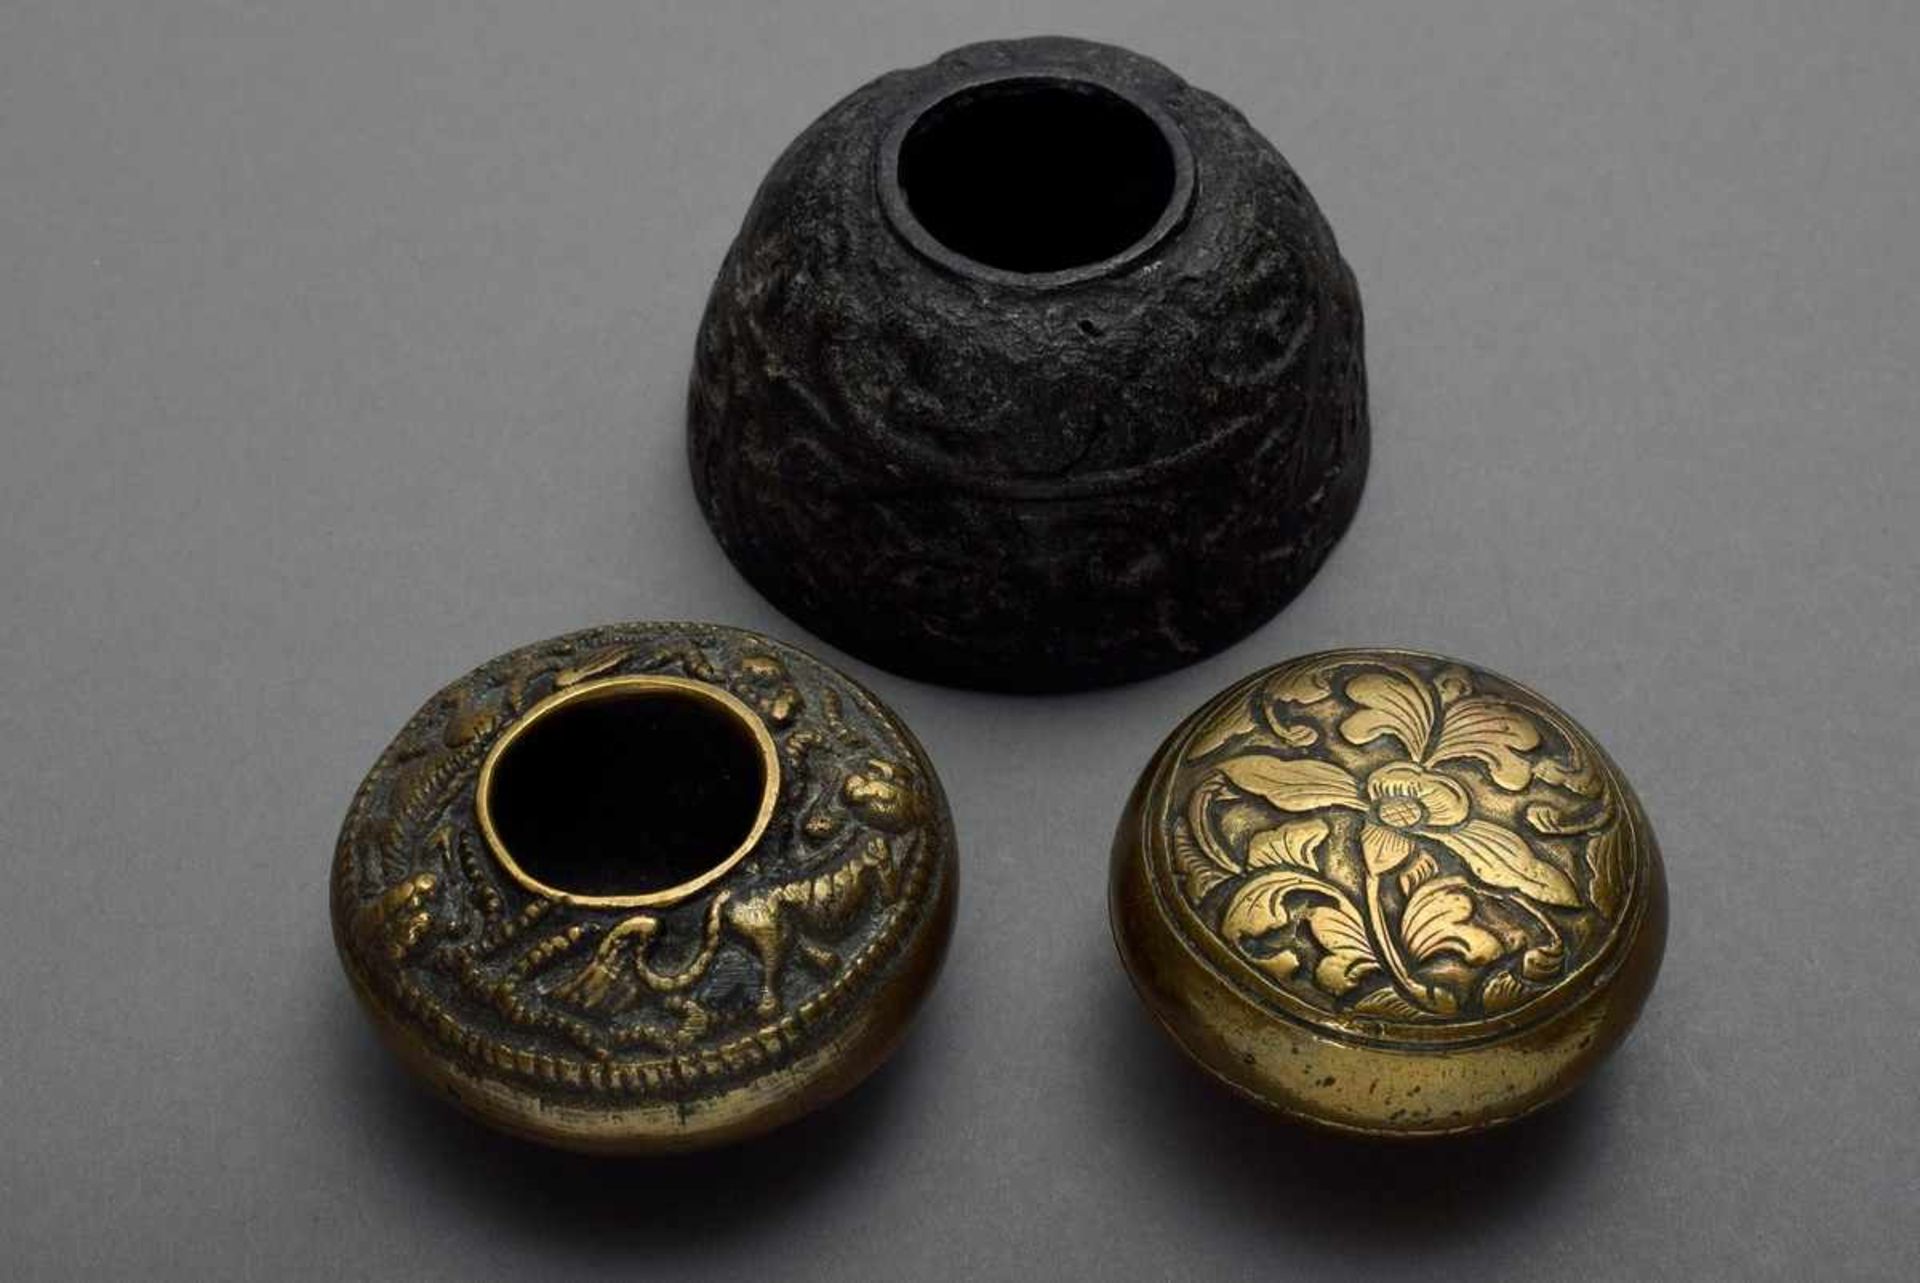 3 Diverse Teile Bronze Pinselwascher und Siegellackdose mit Reliefdekor, China, Ø 5-7cm, z.T. mit